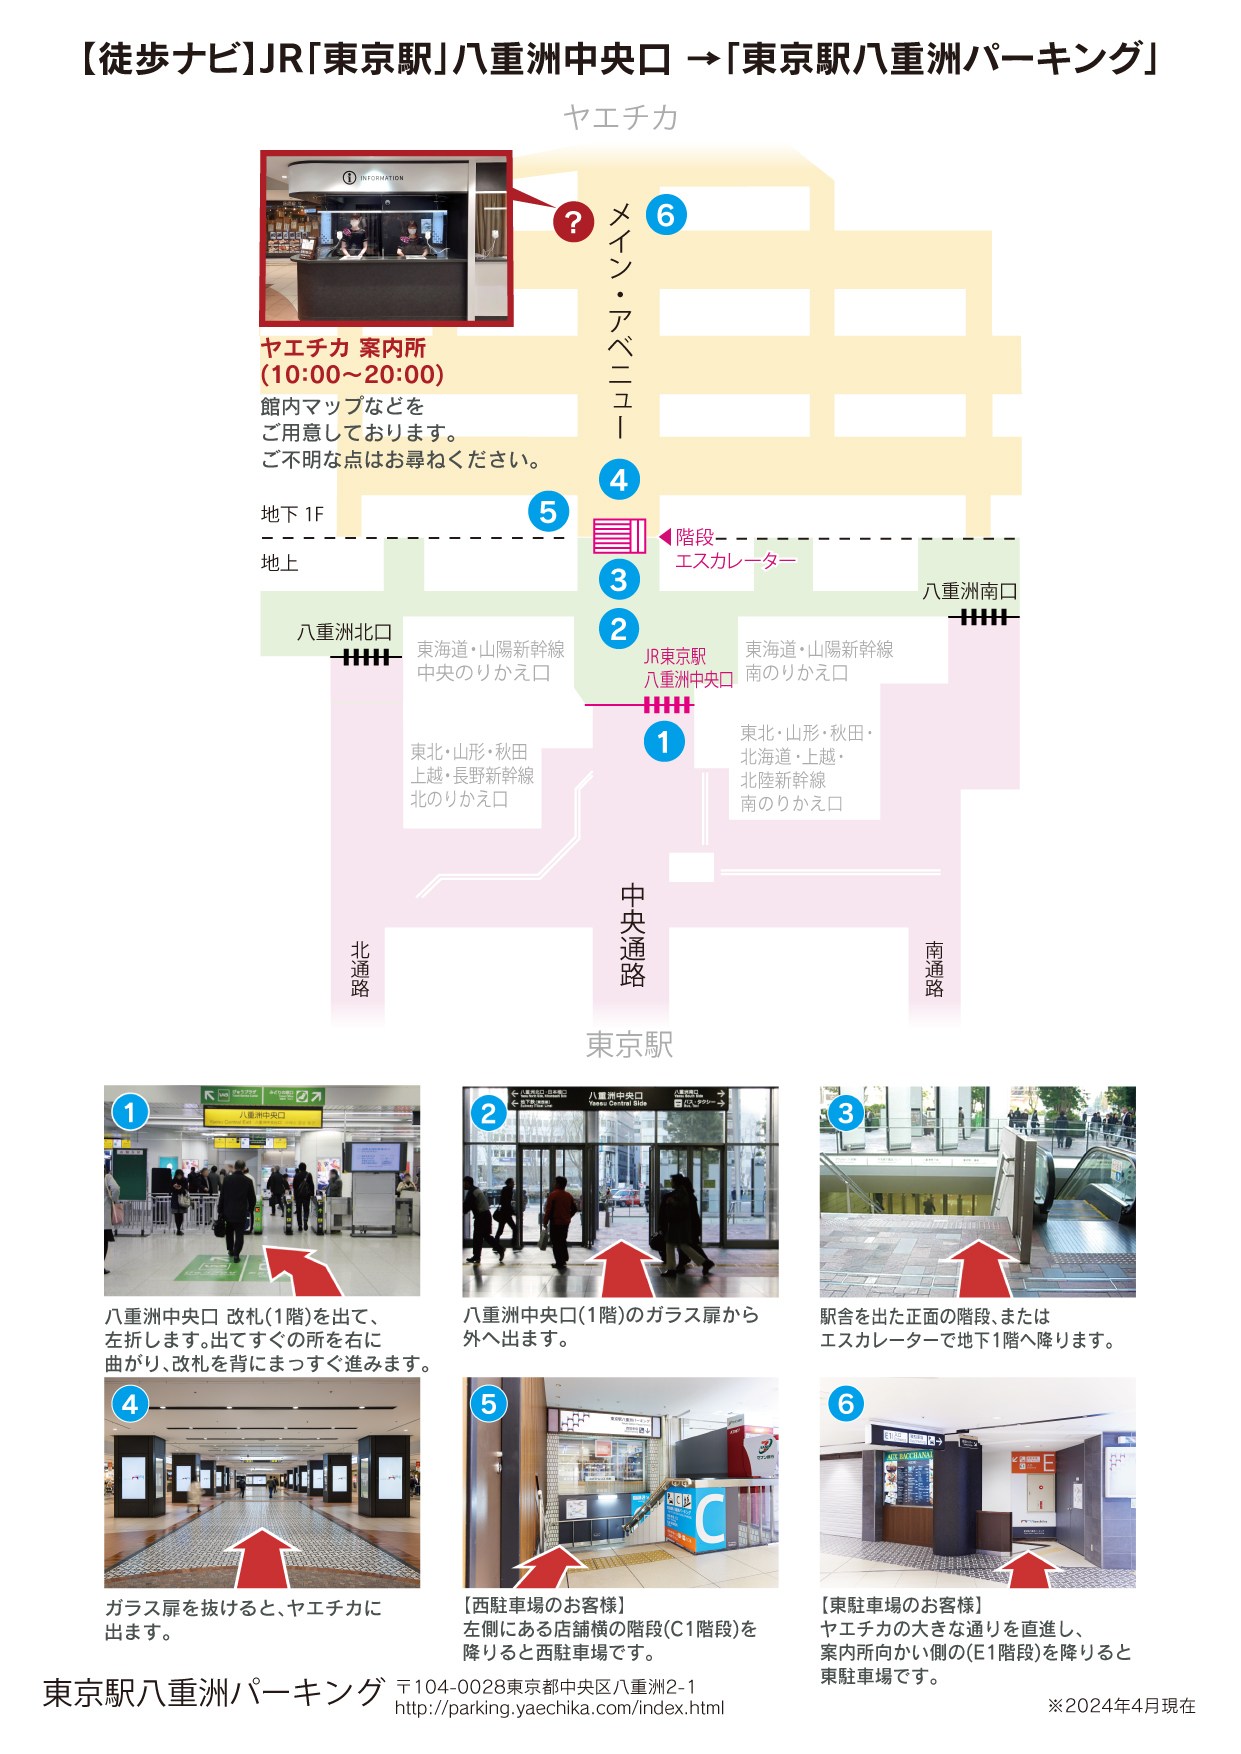 JR「東京駅」八重洲中央口から八重洲パーキングまでの道順のご案内です。